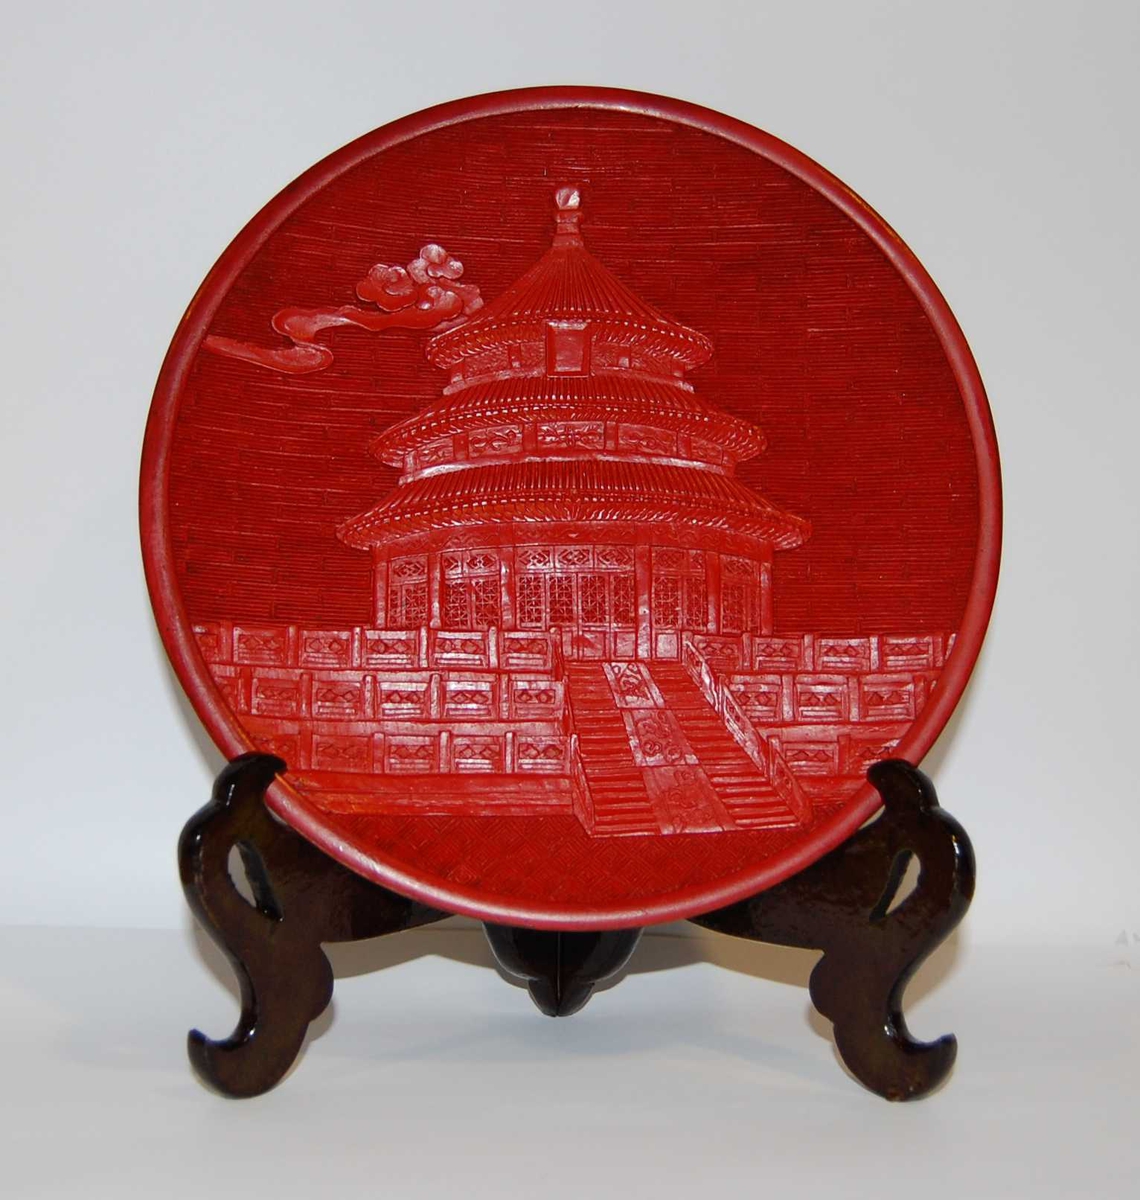 Sort og rød pyntetallerken med motiv av Himmelens tempel i Beijing. Det følger med en støtte til tallerkenen. Tallerkeken ligger i en mønstret eske.